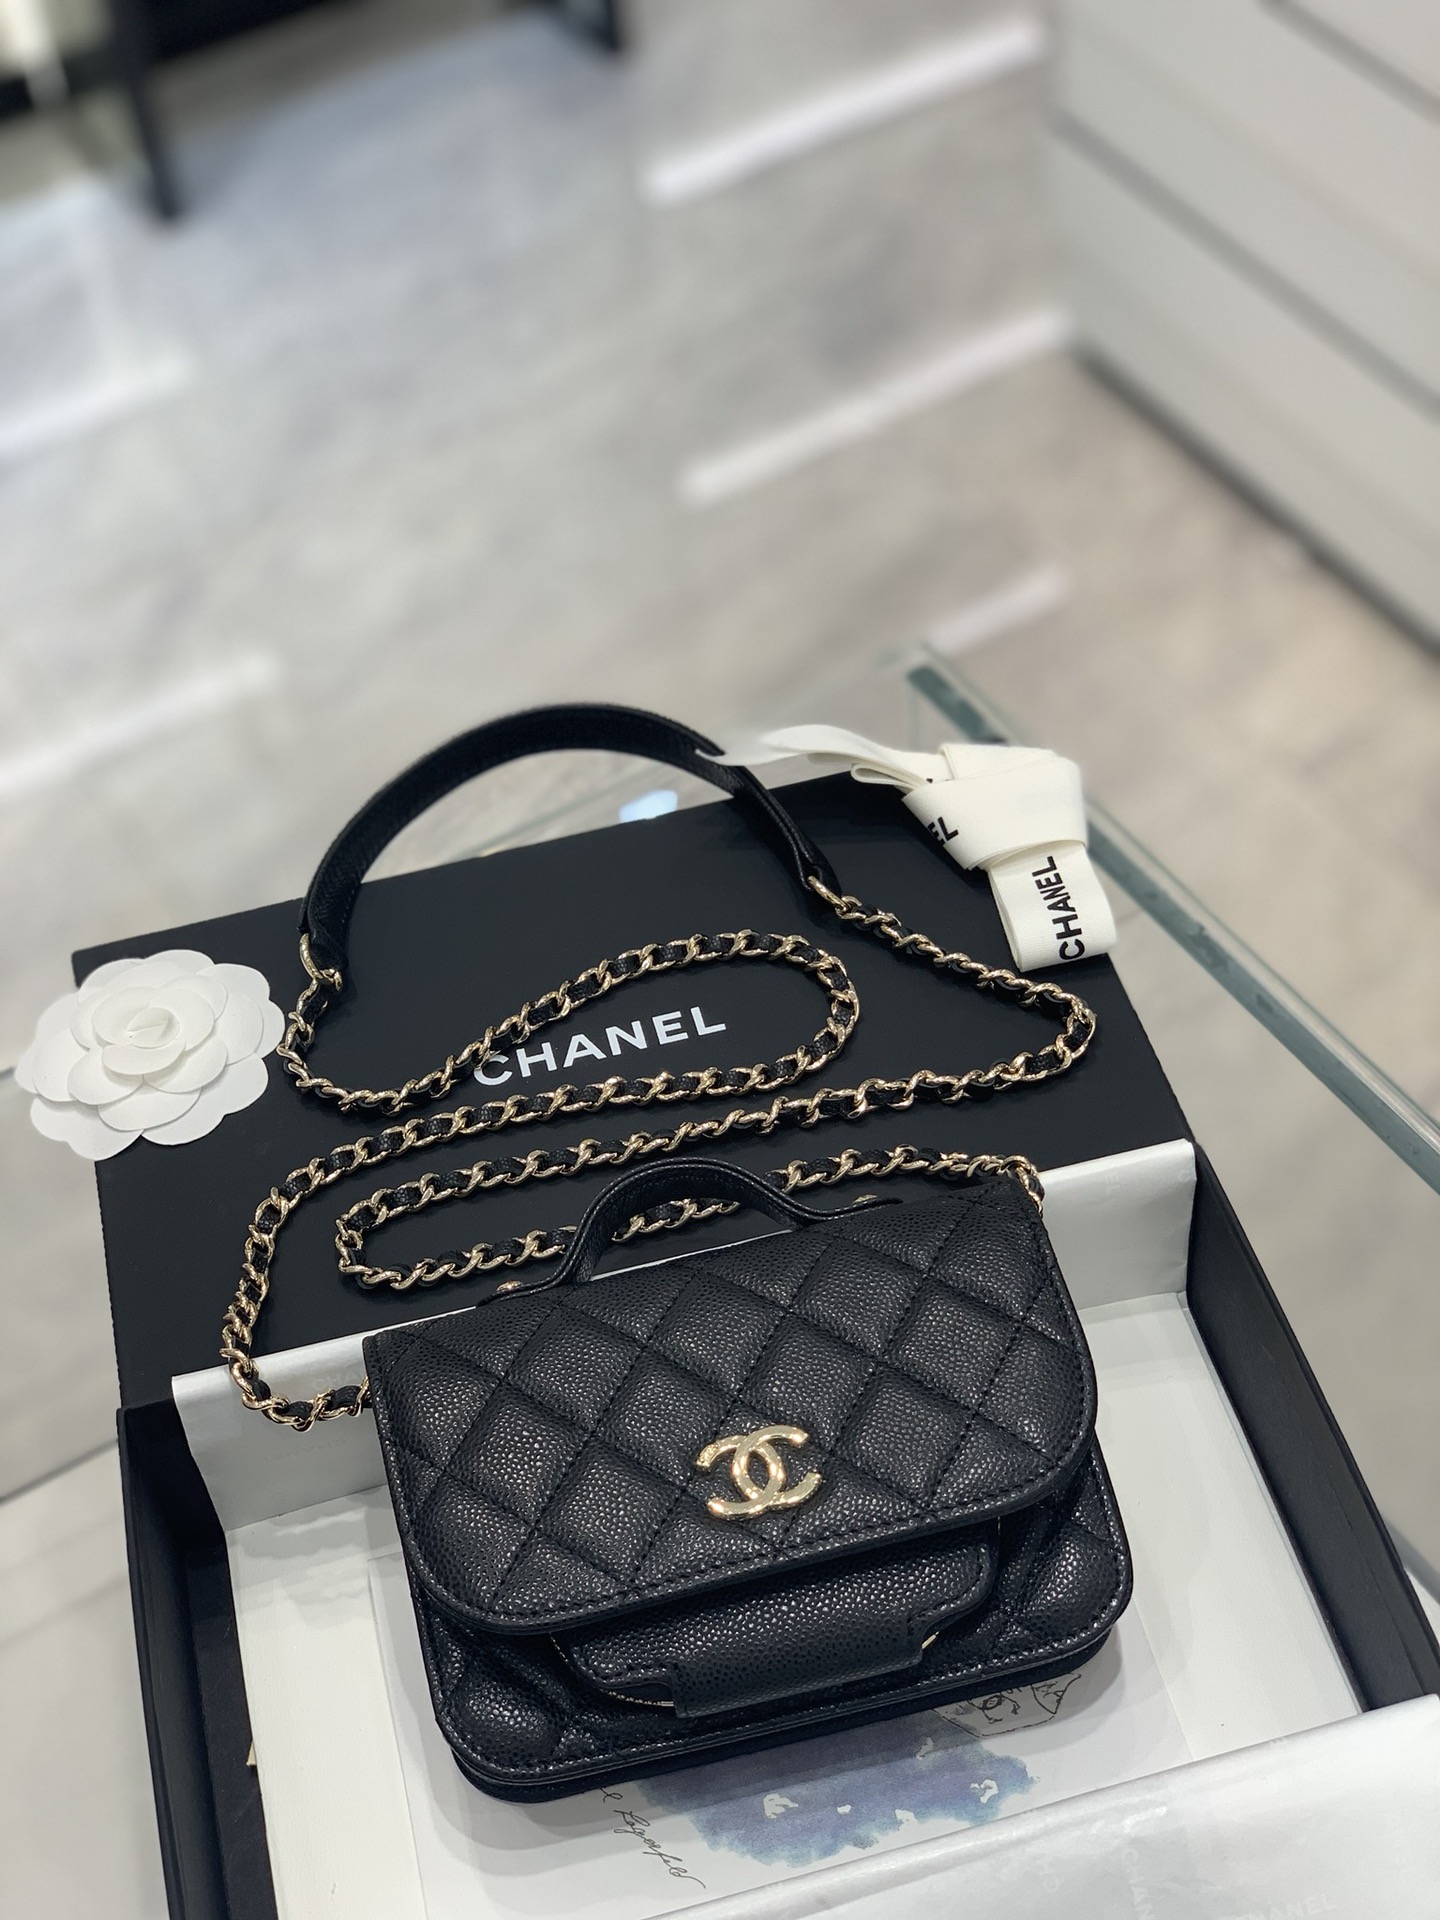 Túi Chanel 22SS Small Vanity Case đen khóa vàng 17cm best quality